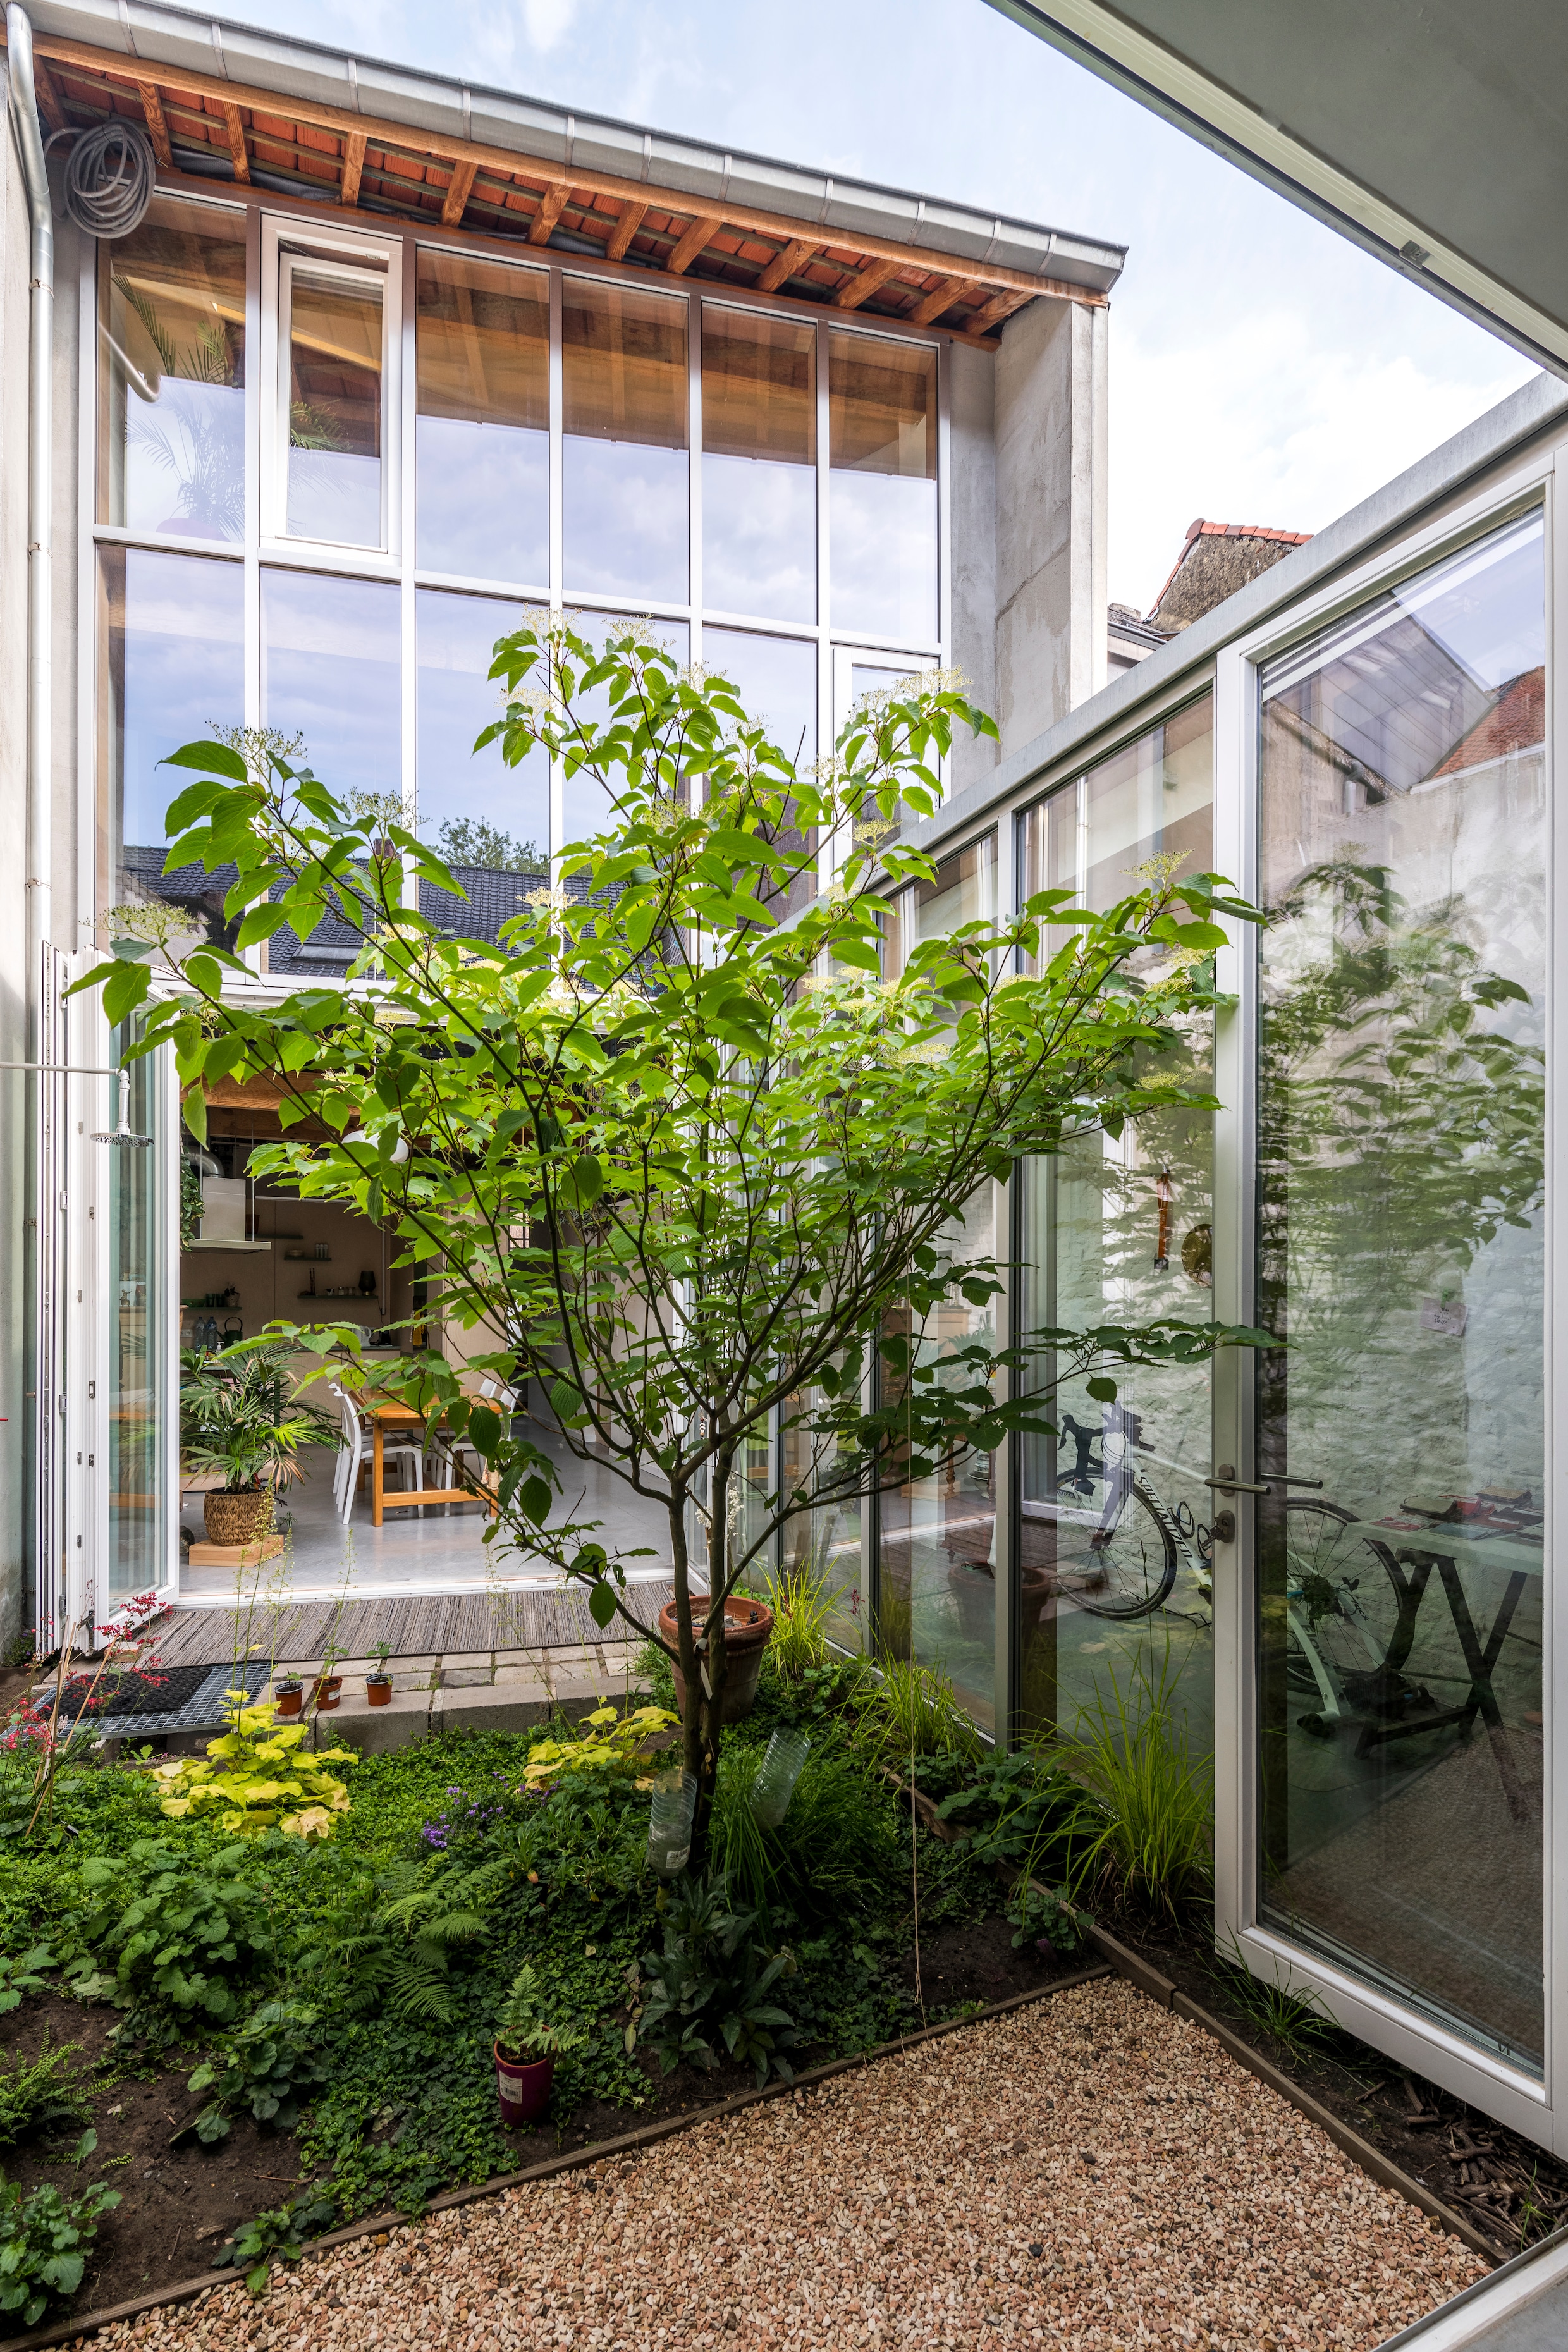 Binnenkijken in een Gents rijhuis met wow-factor: ‘Het vangnet blijft spectaculair’